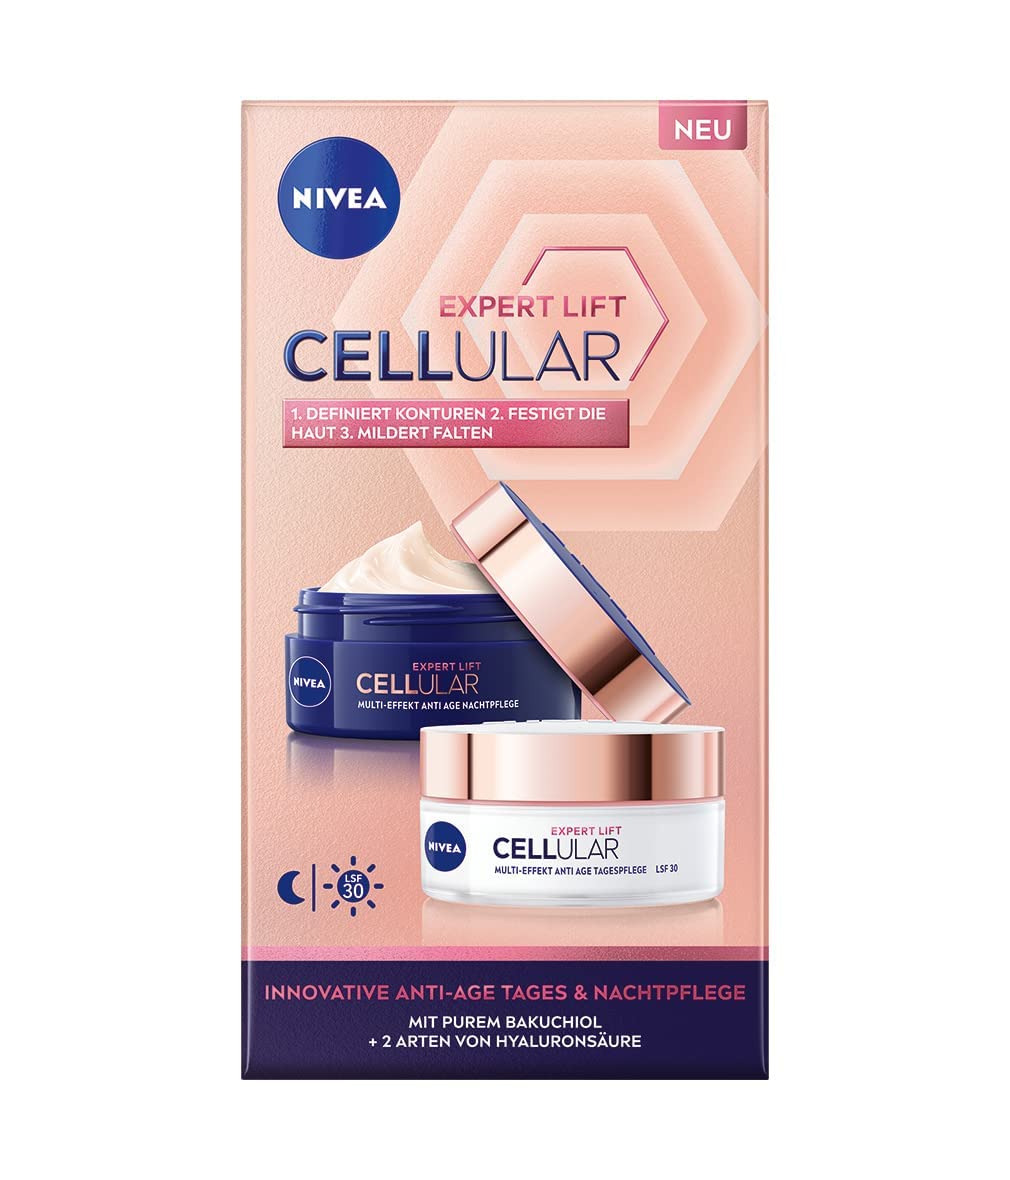 NIVEA Cellular Expert Lift Multi-Effekt Anti-Age Pflegeset Tages- & Nachtpflege, feuchtigkeitsspendende Gesichtspflege für eine straffe und jünger aussehende Haut